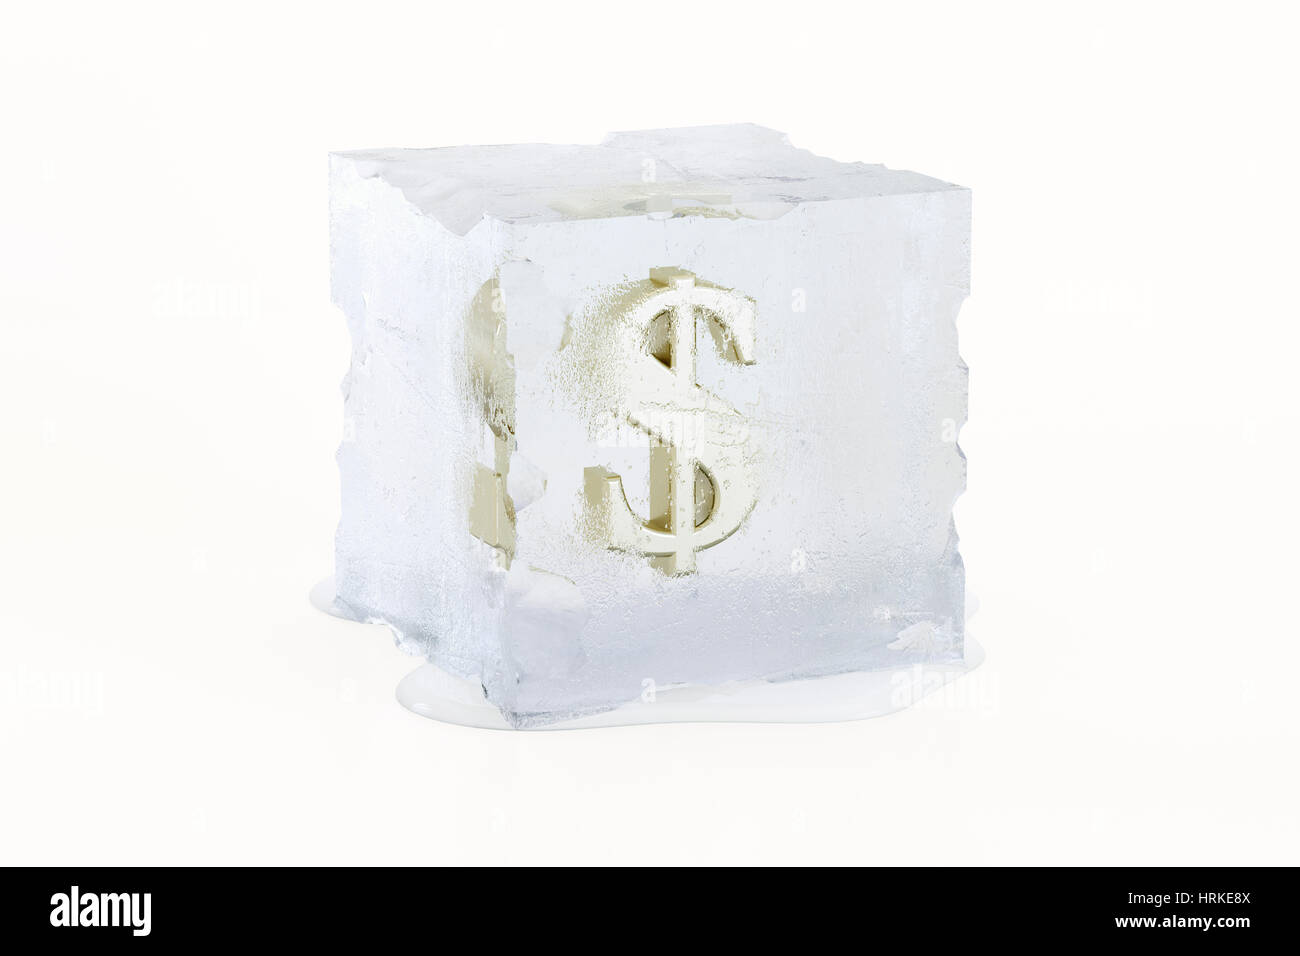 Le symbole du dollar US en or congelé dans un cube de glace fond lentement Banque D'Images